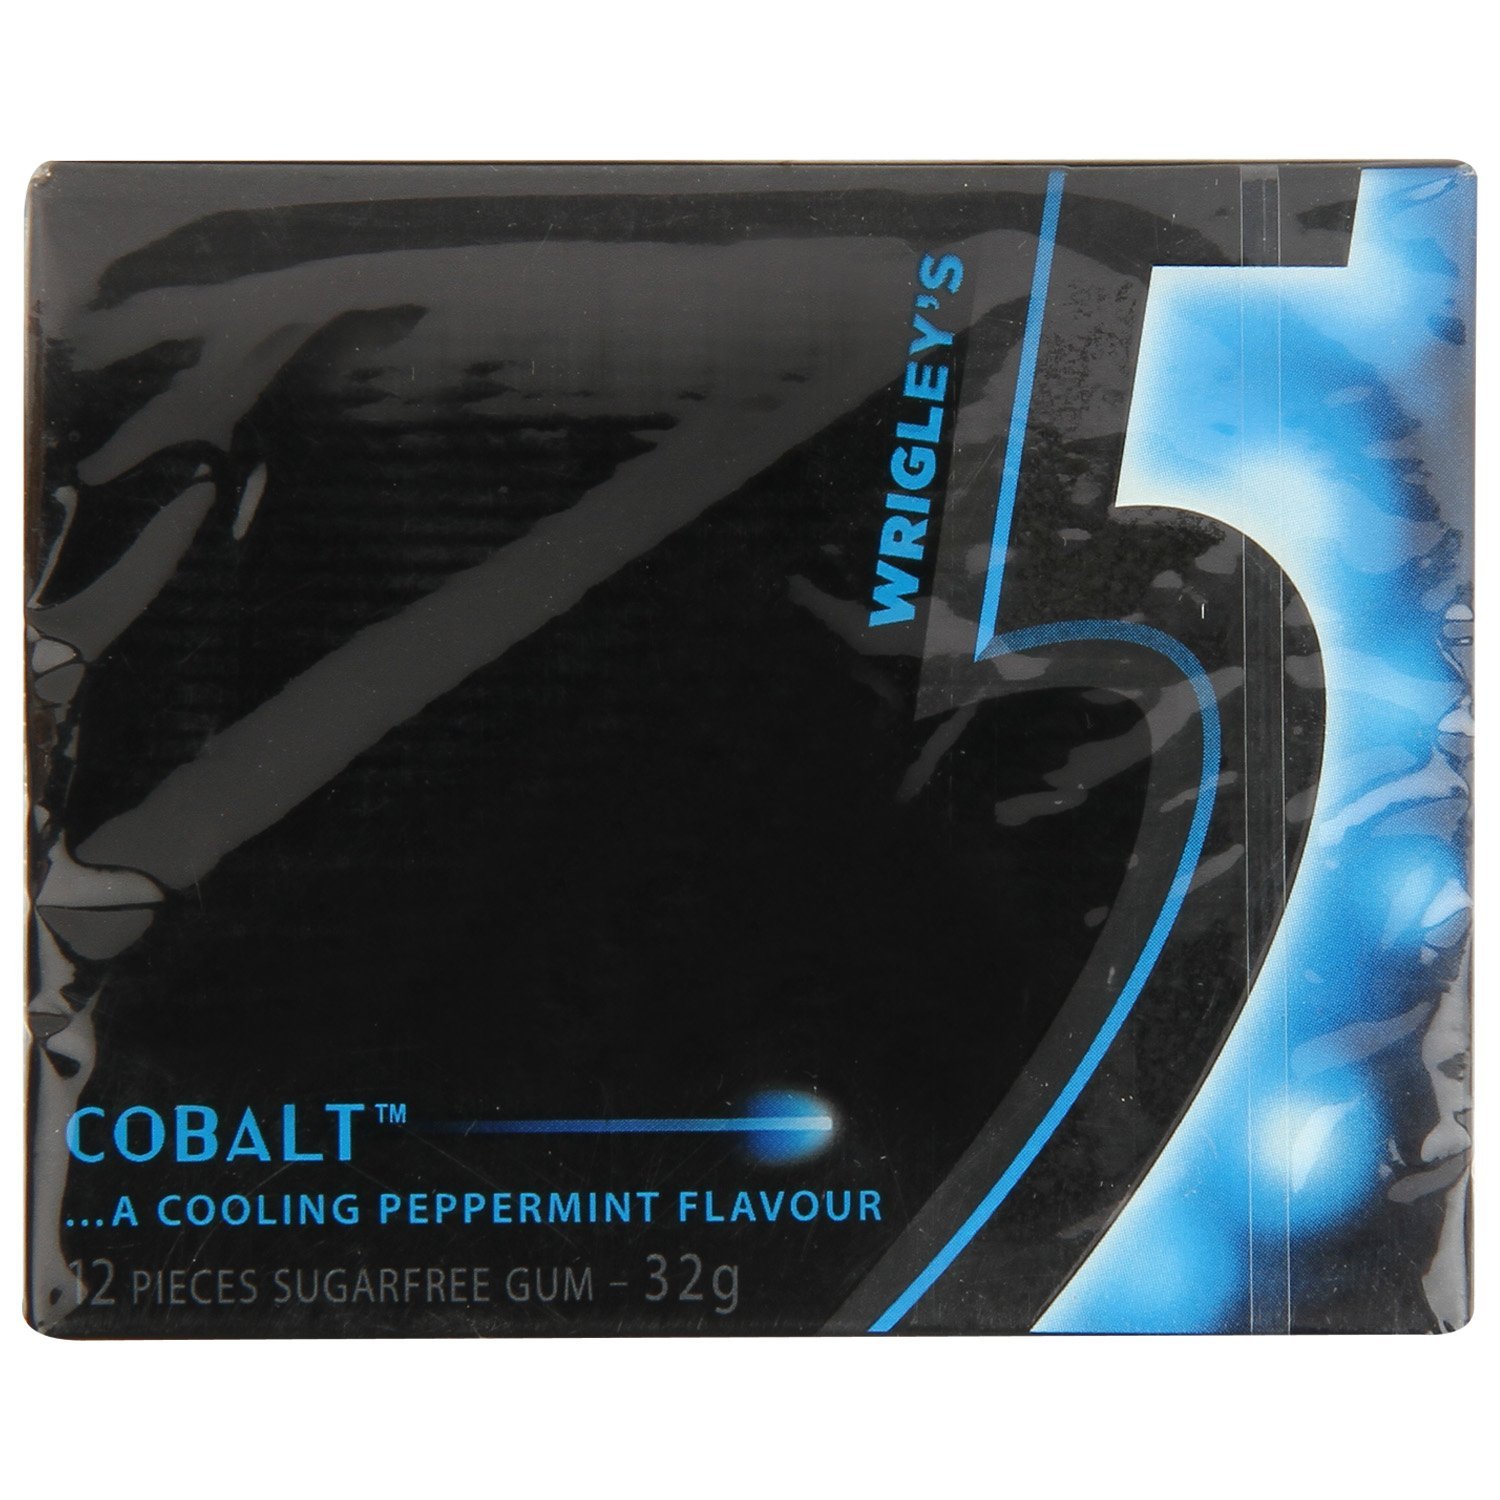 Amazon.com : Wrigley's 5 Cobalt Cooling Peppermint Sugar free GUM ...